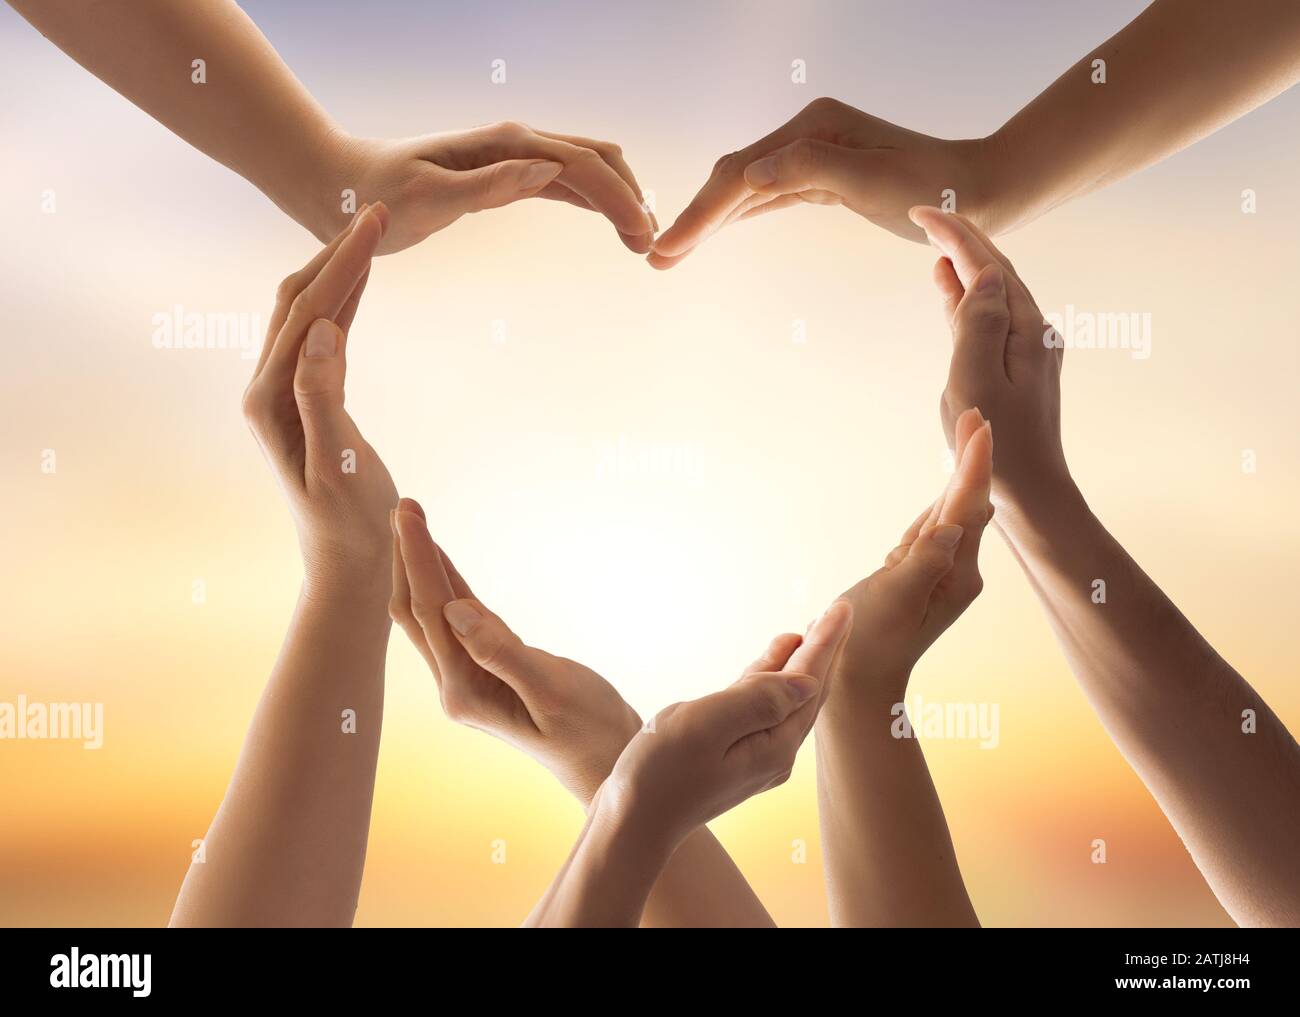 Symbole et forme du coeur créé à partir des mains.le concept d'unité, de coopération, de partenariat, de travail d'équipe et de charité. Banque D'Images